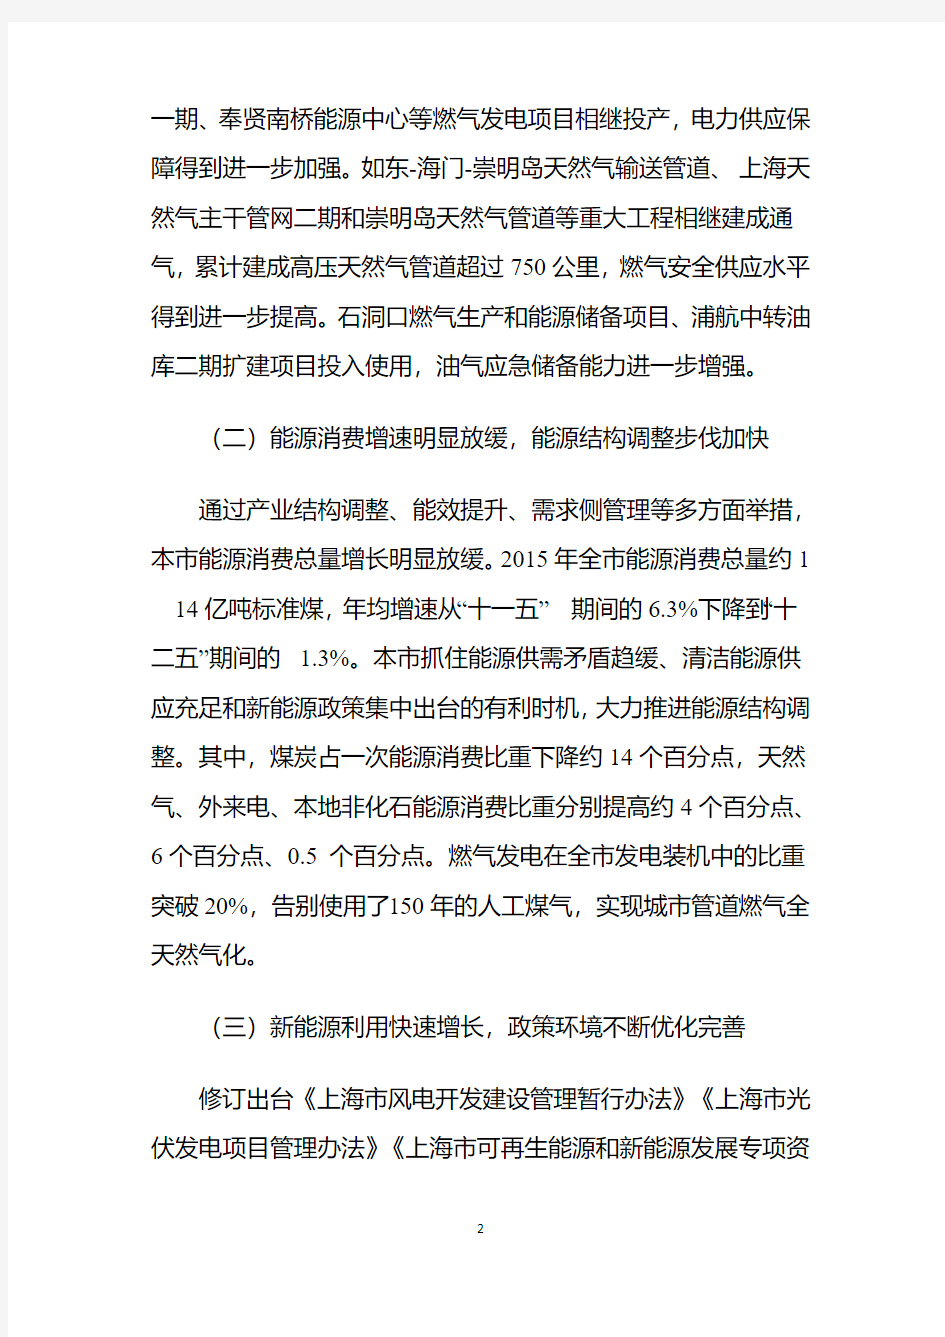 上海能源发展十三五规划